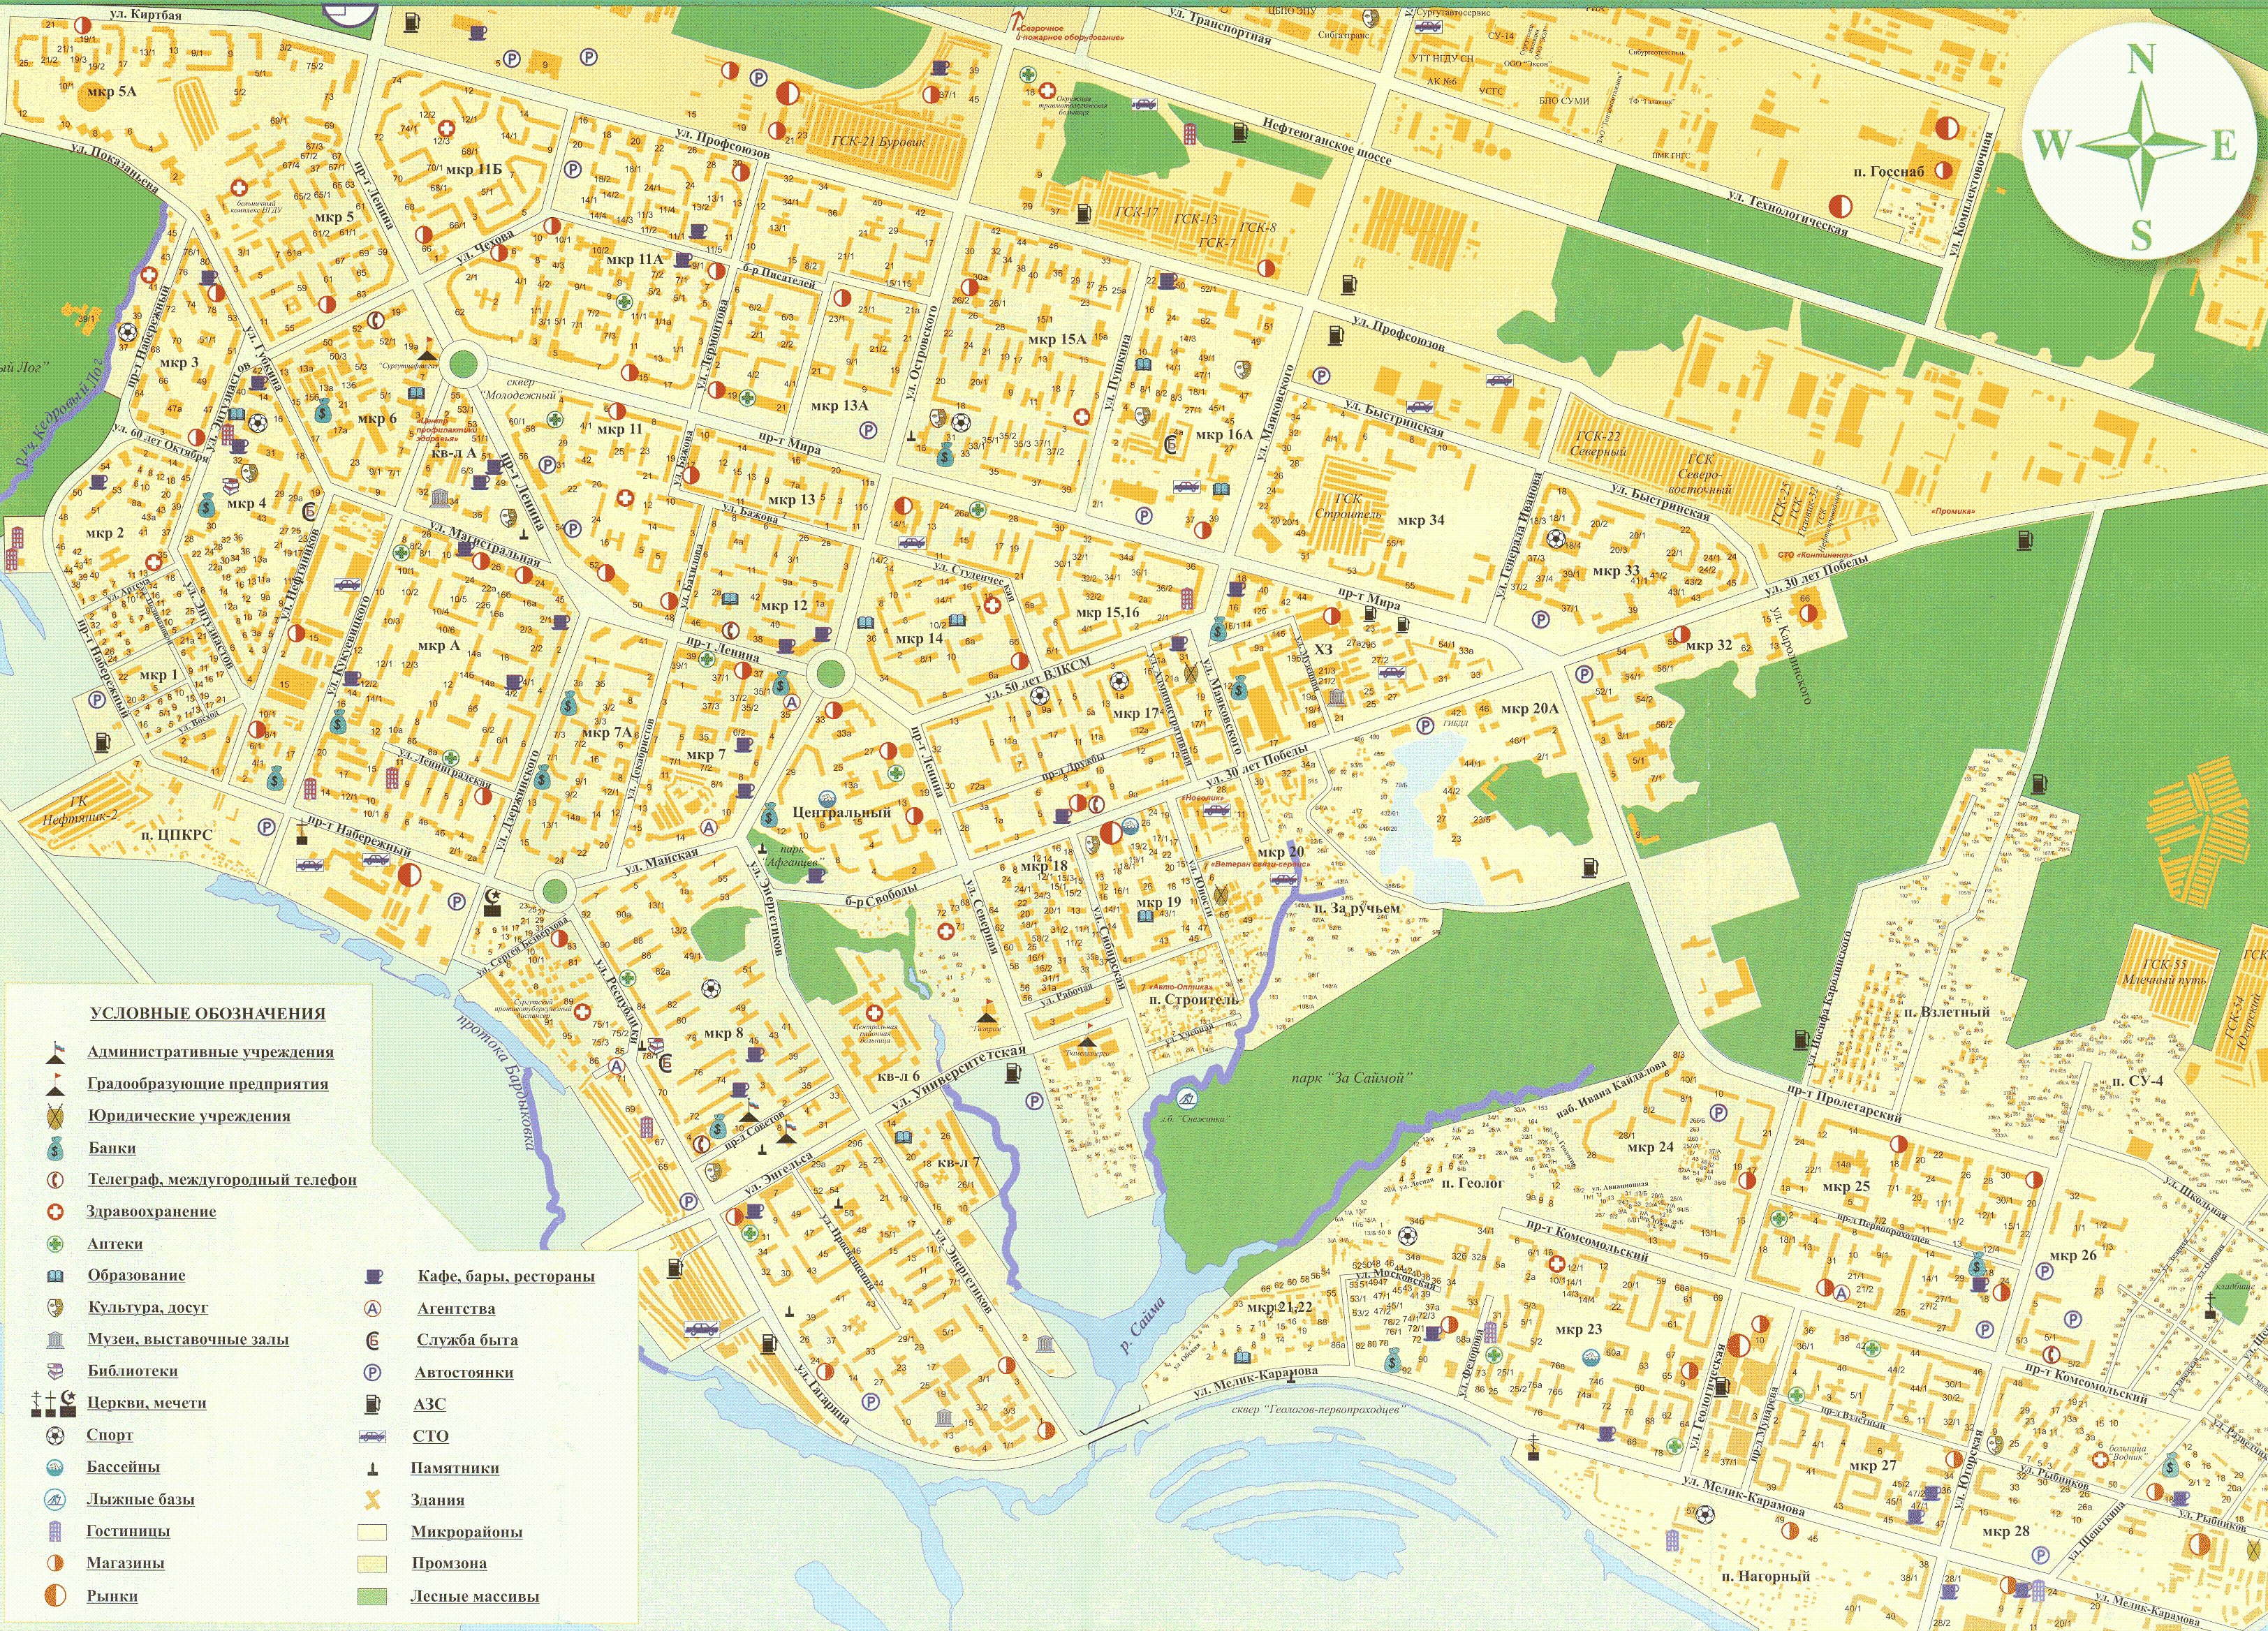 Восточная 45 на карте. Карта Сургута по районам города. Сургут по районам на карте. Город Сургут на карте. Карта Сургута с микрорайонами.